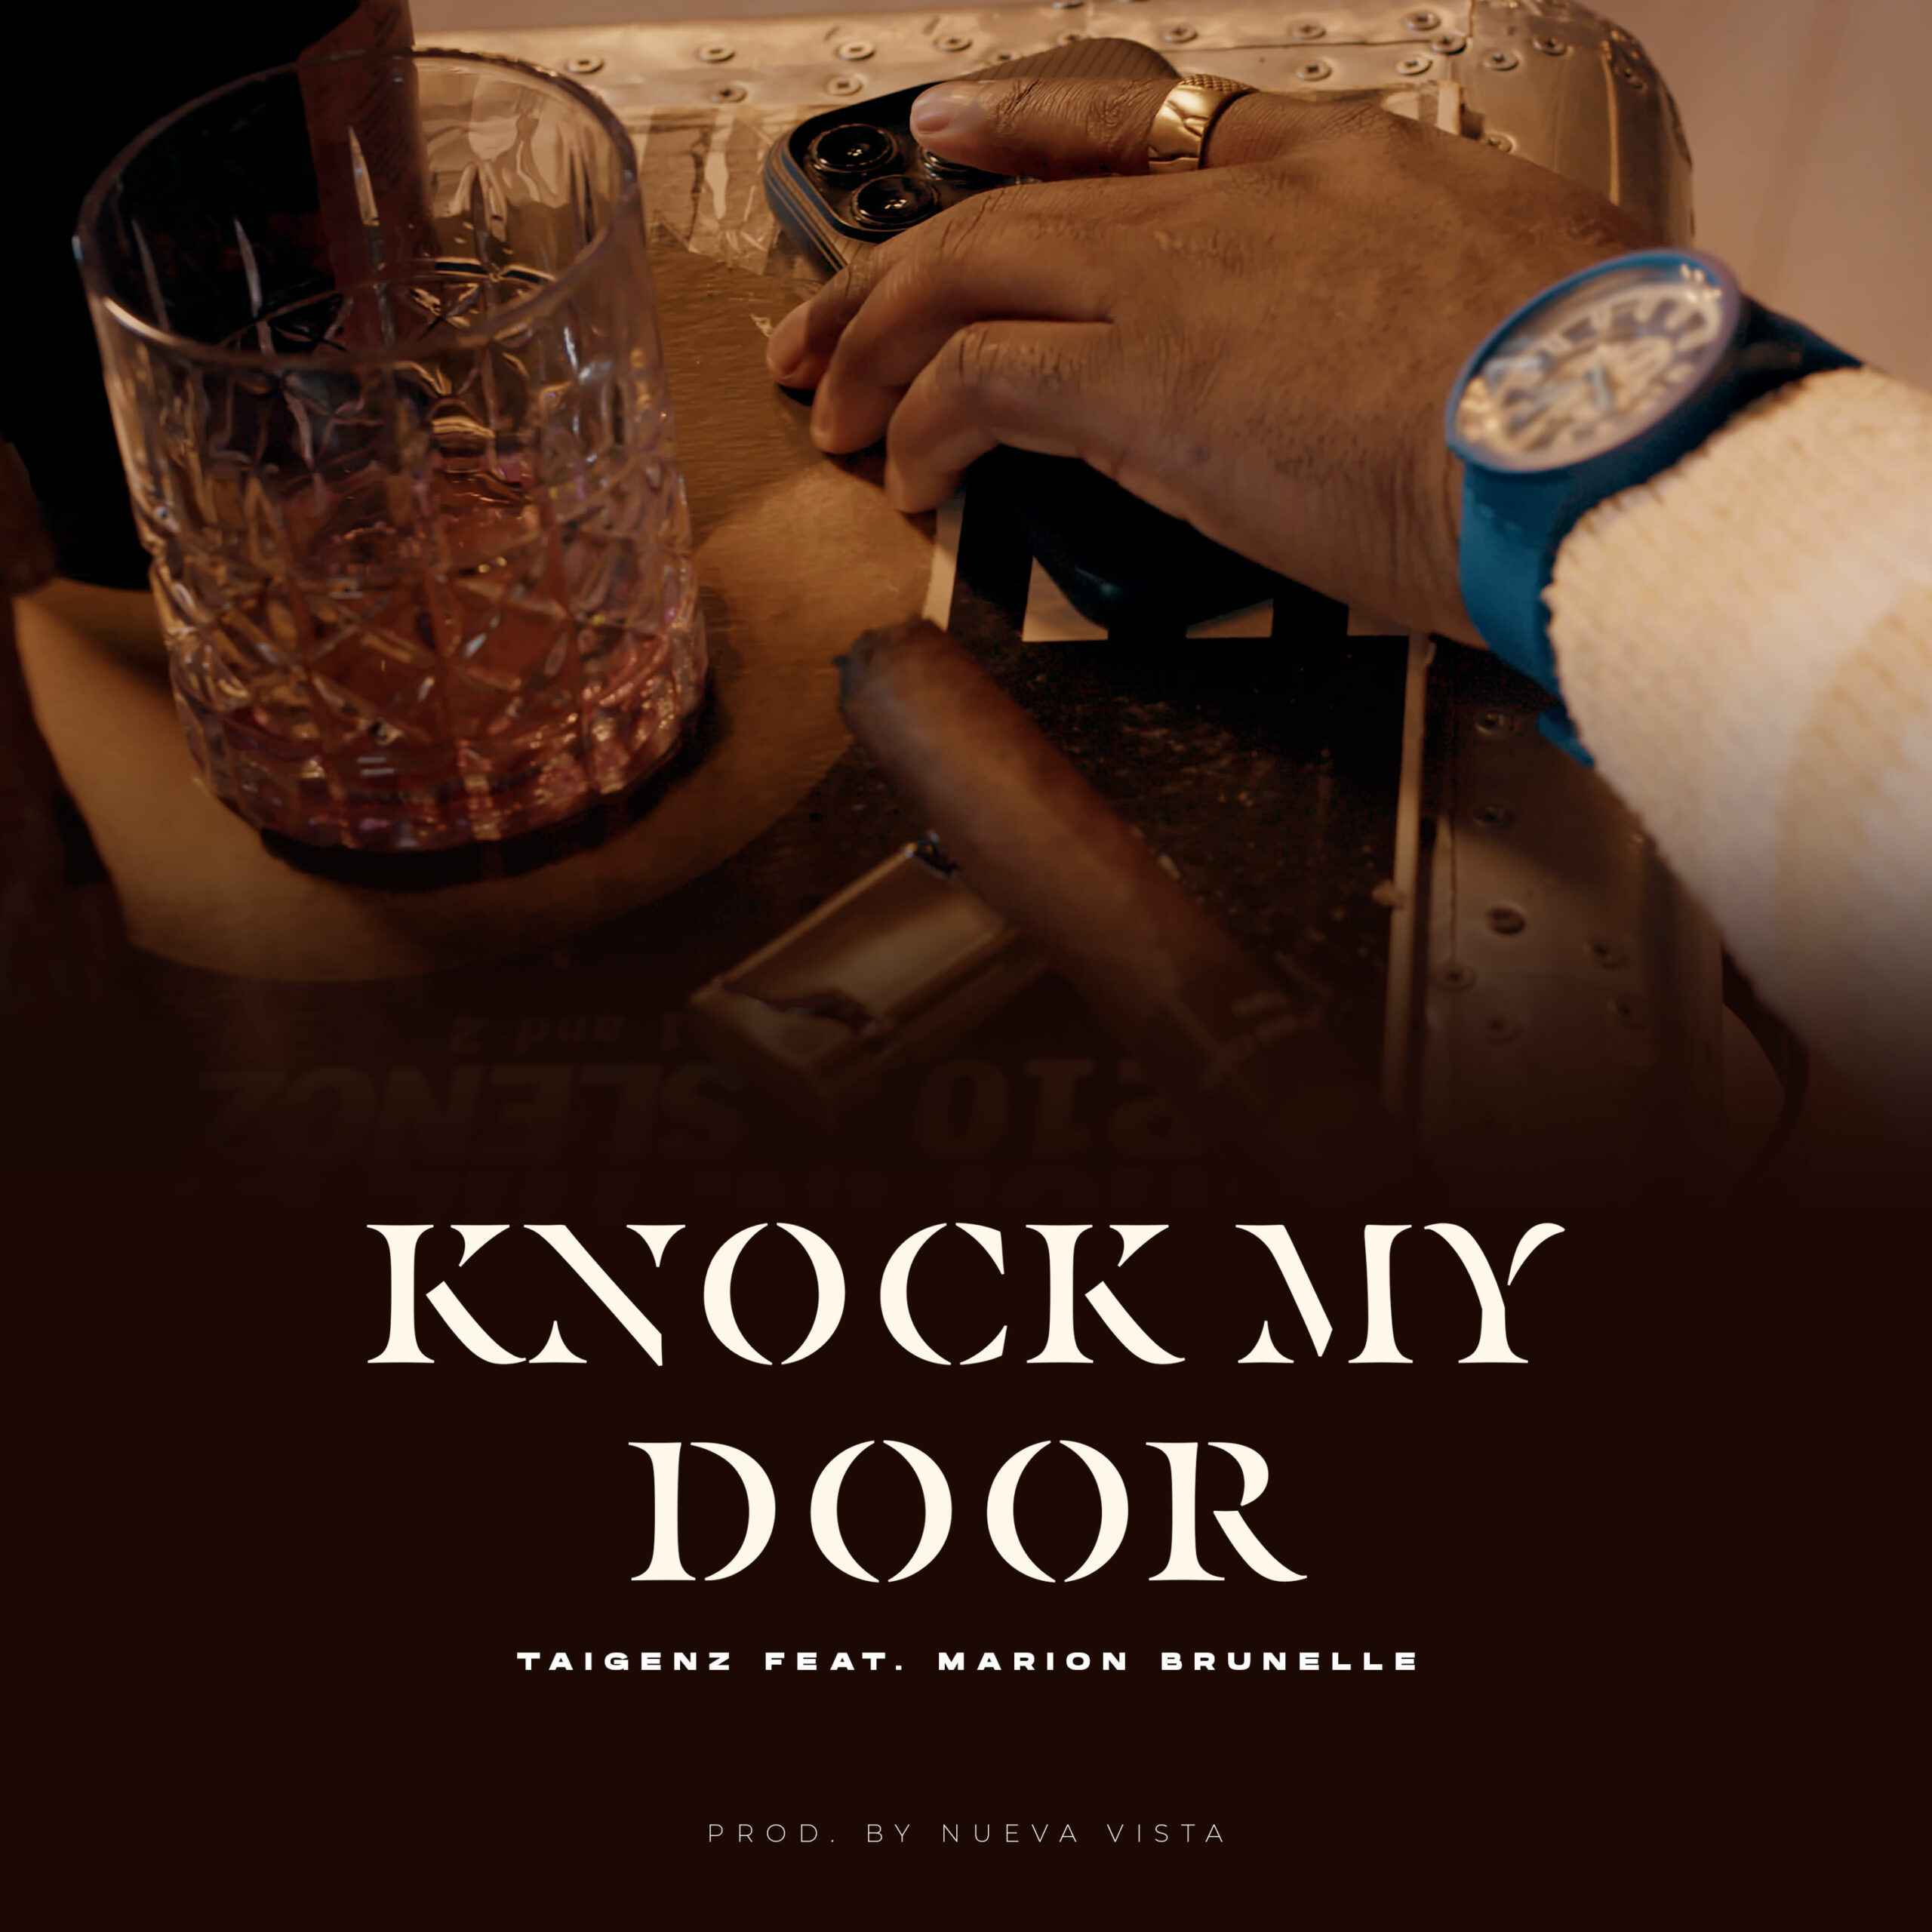 Taigenz "Knock My Door" single artwork